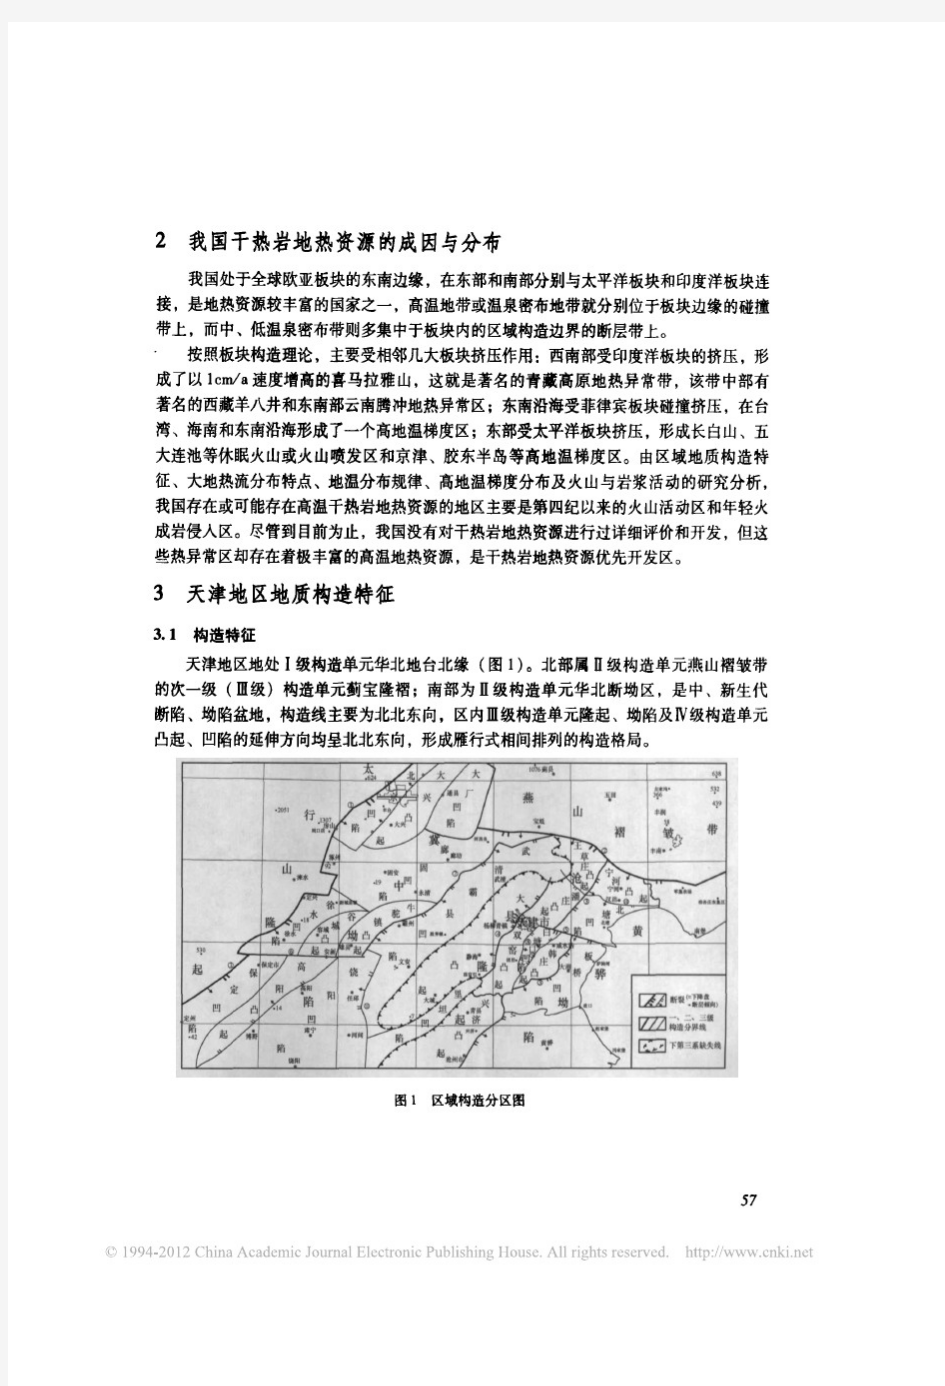 天津地区干热岩地热资源开发利用前景浅析_曾梅香